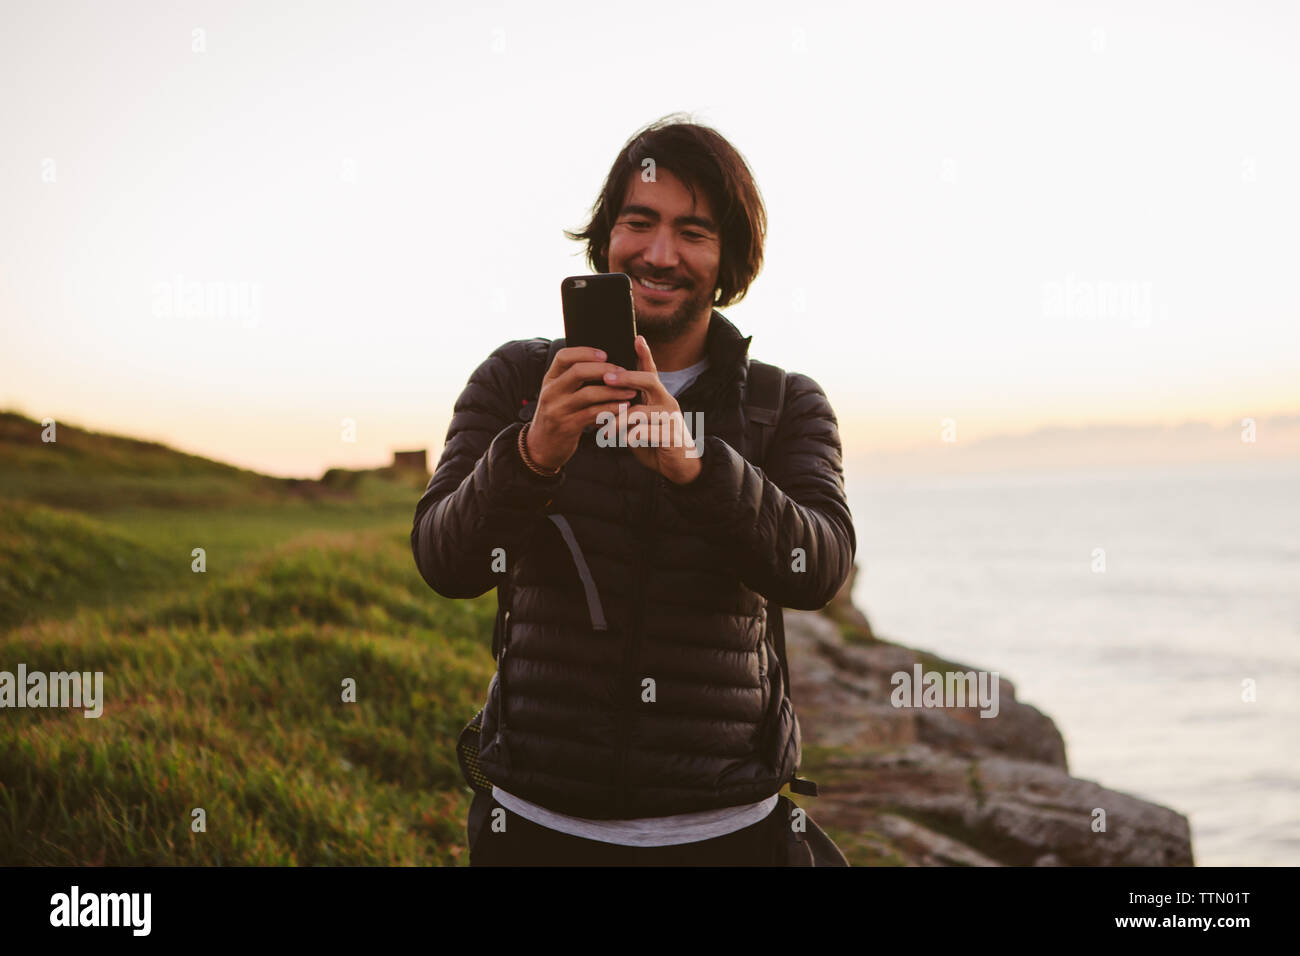 Gerne männliche Wanderer Fotografieren durch Smart Phone beim Stehen auf einem Hügel mit Meerblick gegen den klaren Himmel Stockfoto